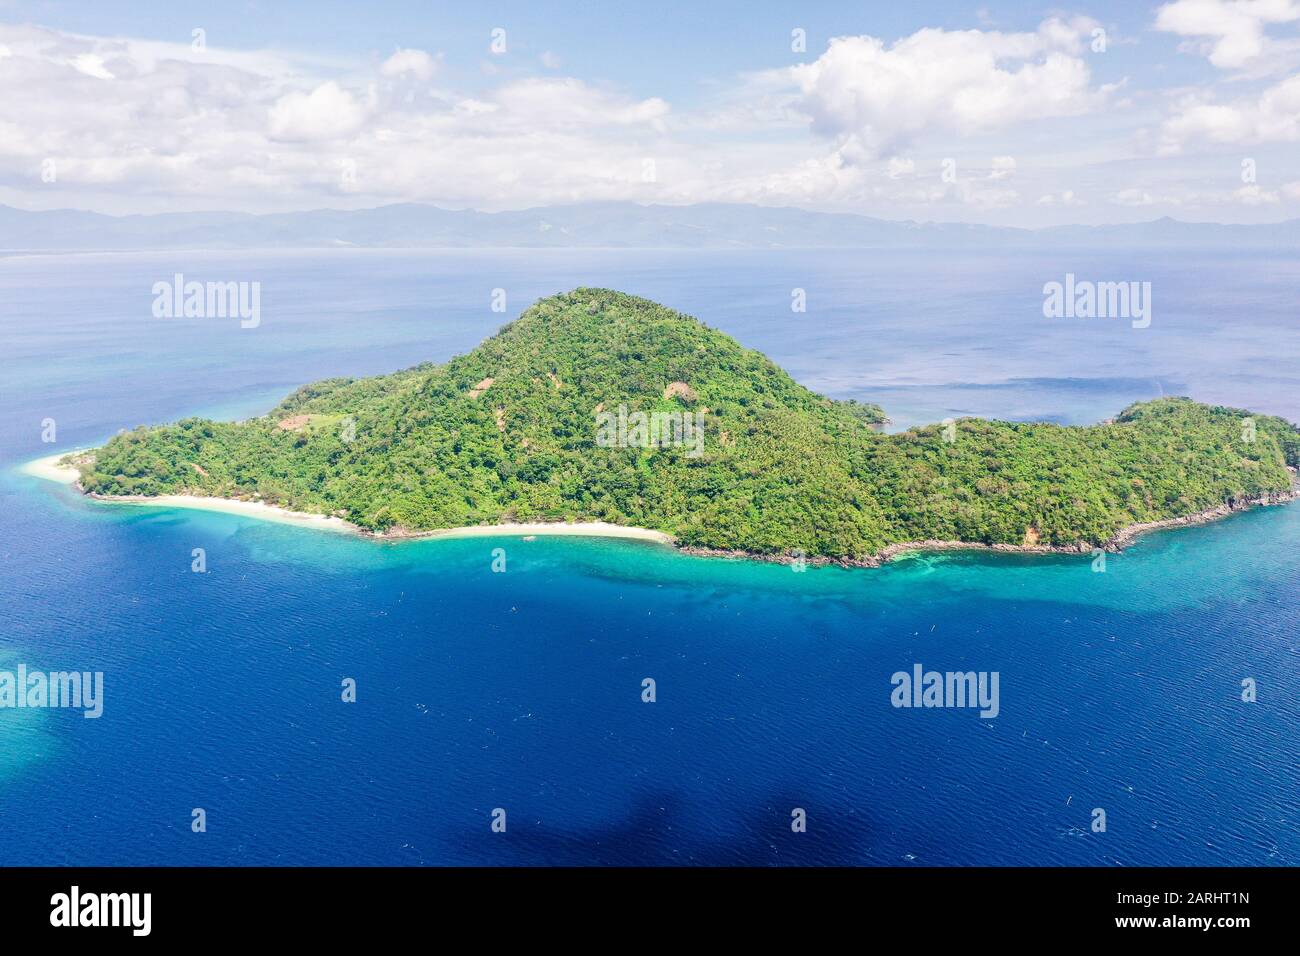 Belle baie avec une île tropicale. Île D'Atulayan, Camarines Sur, Philippines. Seascape, vue de dessus. Concept de vacances d'été et de voyage. Banque D'Images